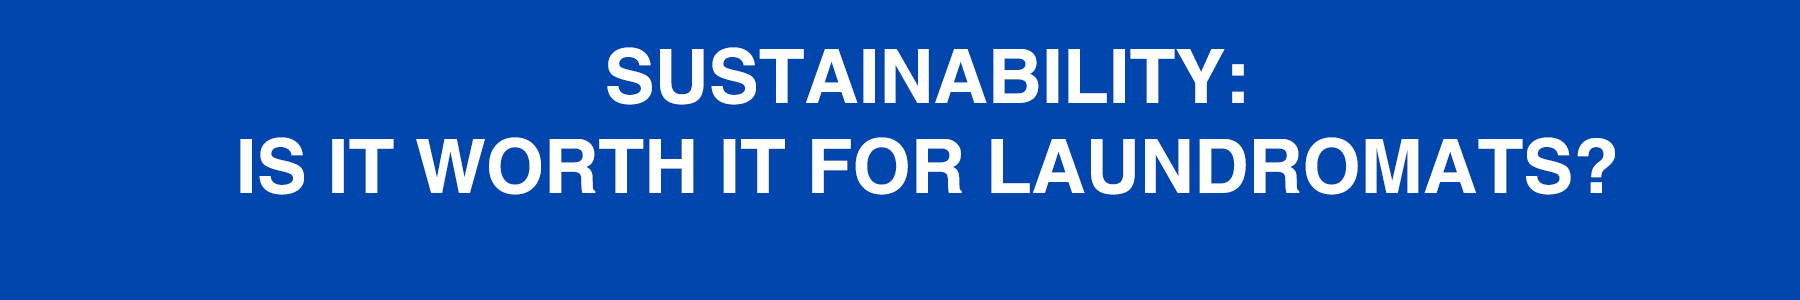 Sustainability_laundromats_eastern_funding